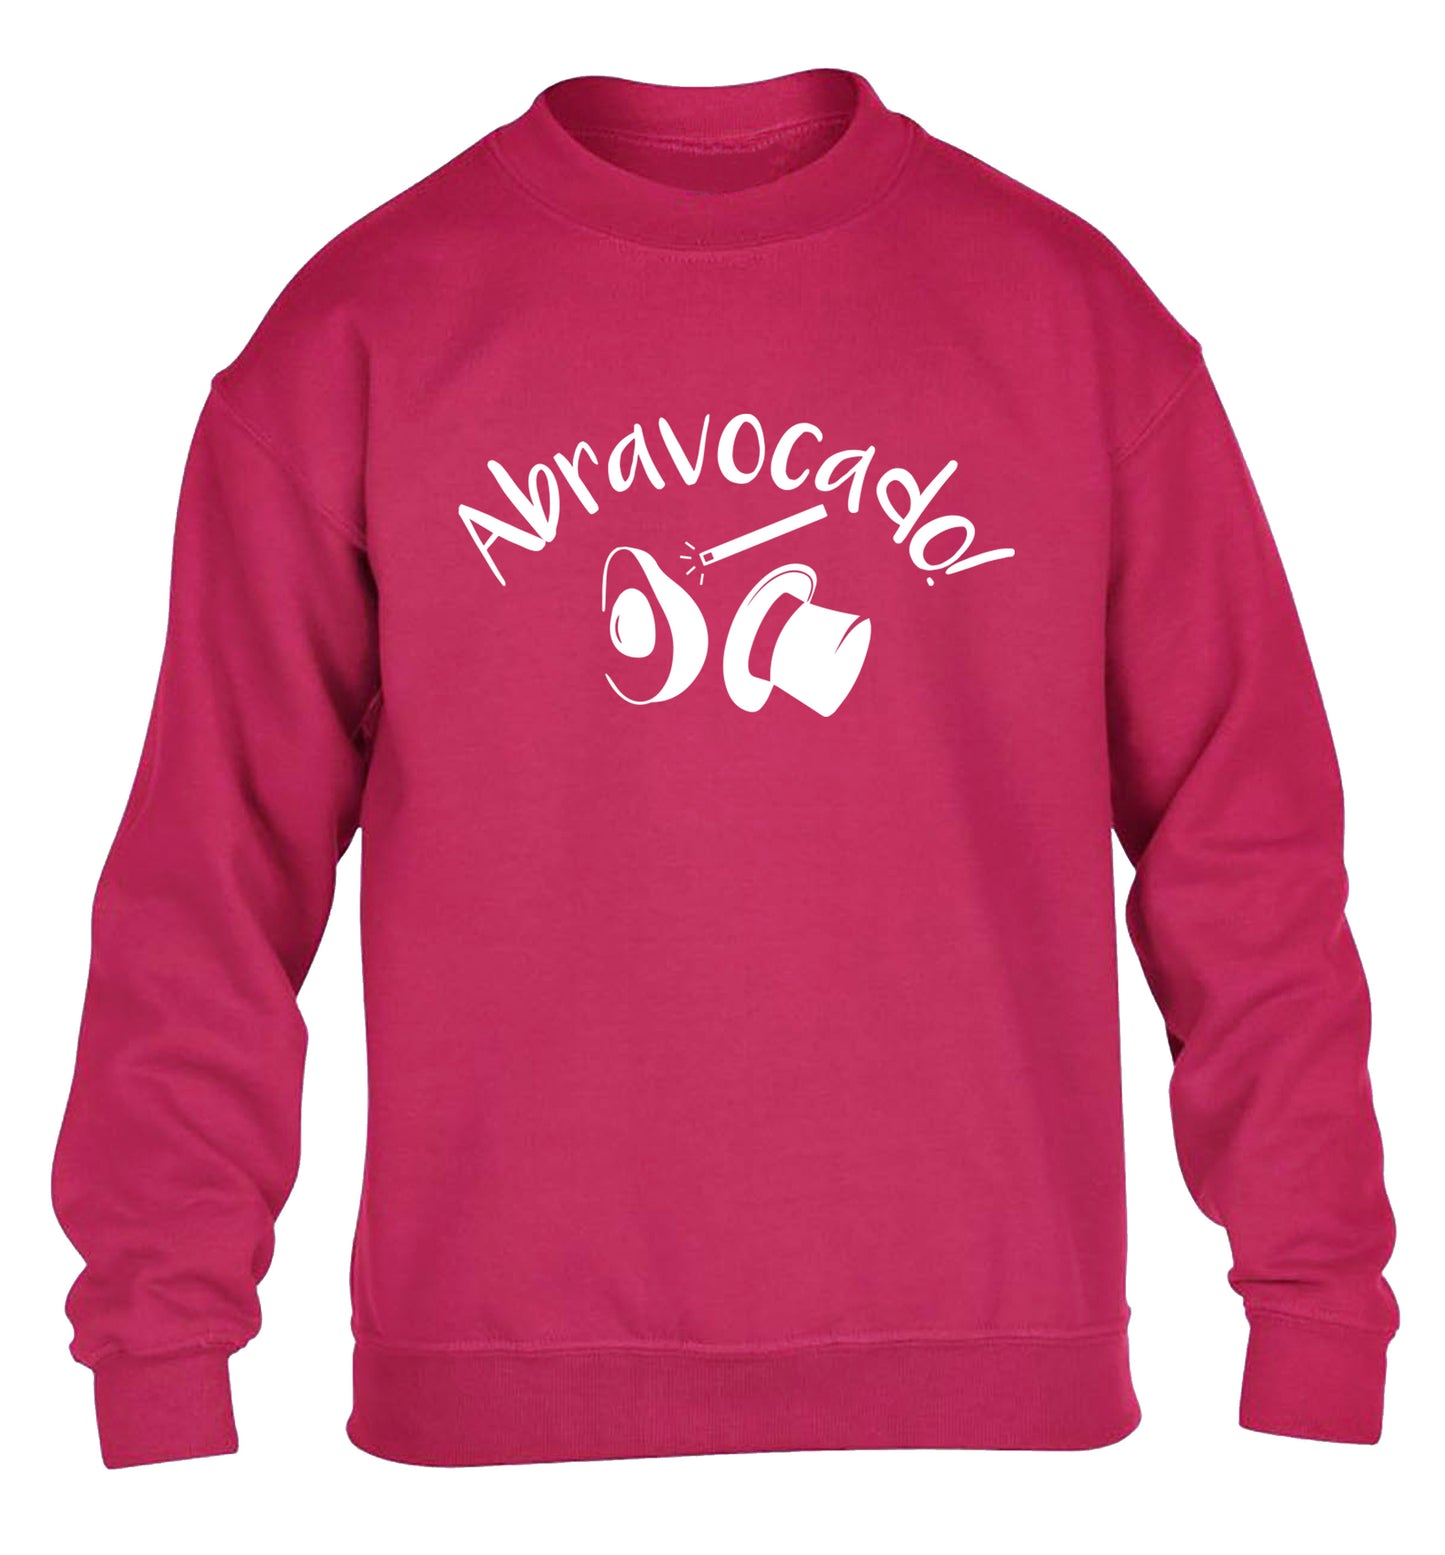 Abravocado children's pink sweater 12-14 Years